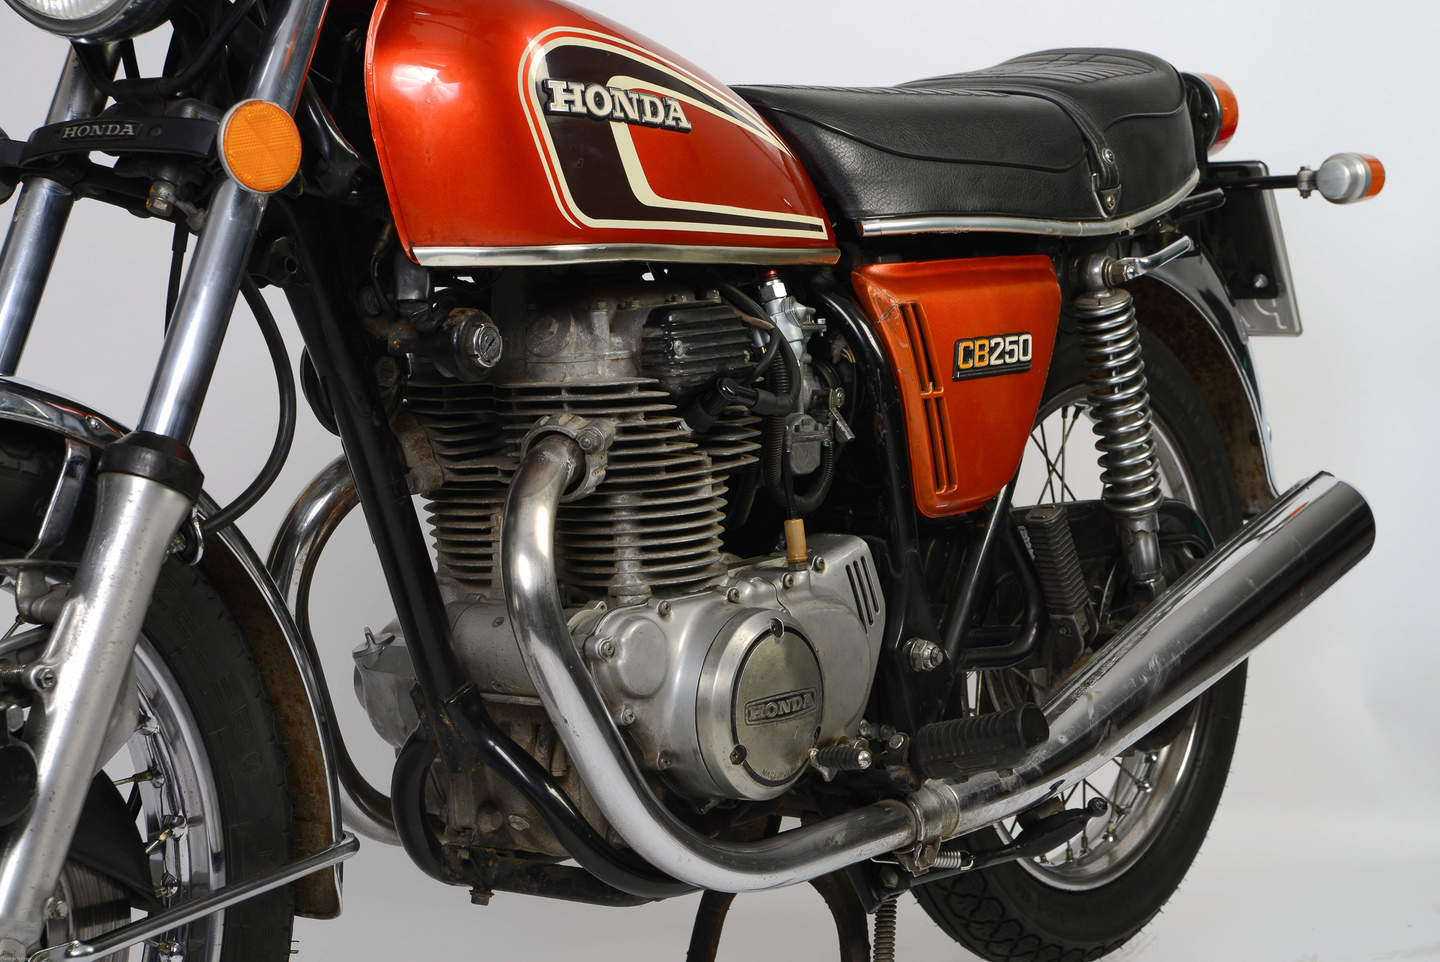 Honda CB 250 K (1967 - 1976) - meistverkaufte 250er Maschine